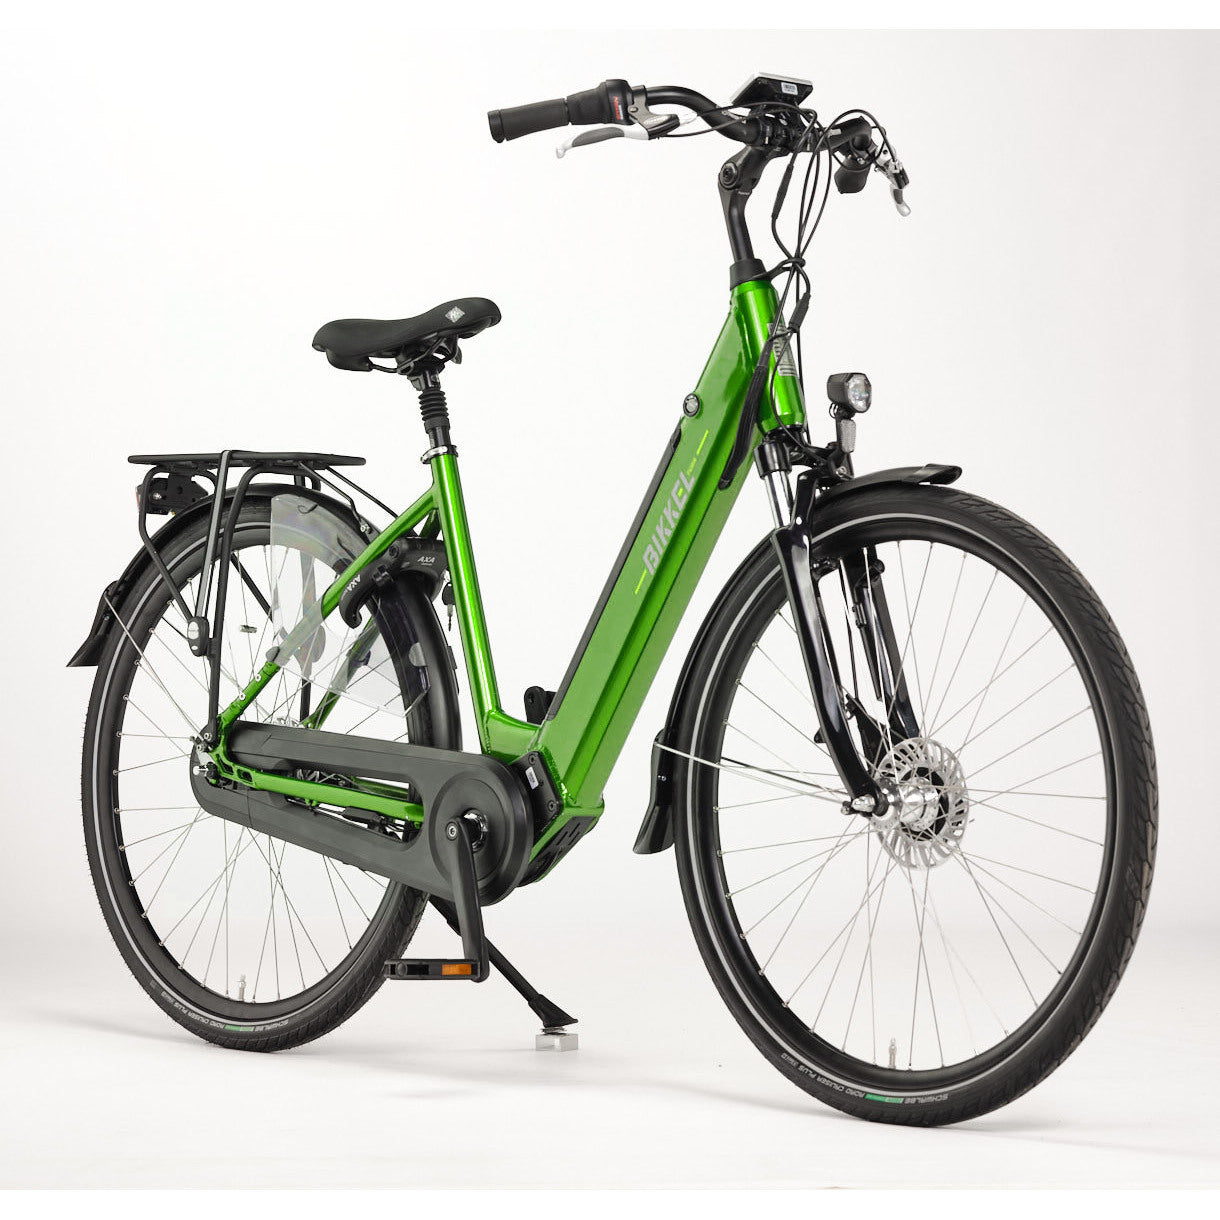 Bikkel iBee Tuba Nexus 7v levendig groen 603wh